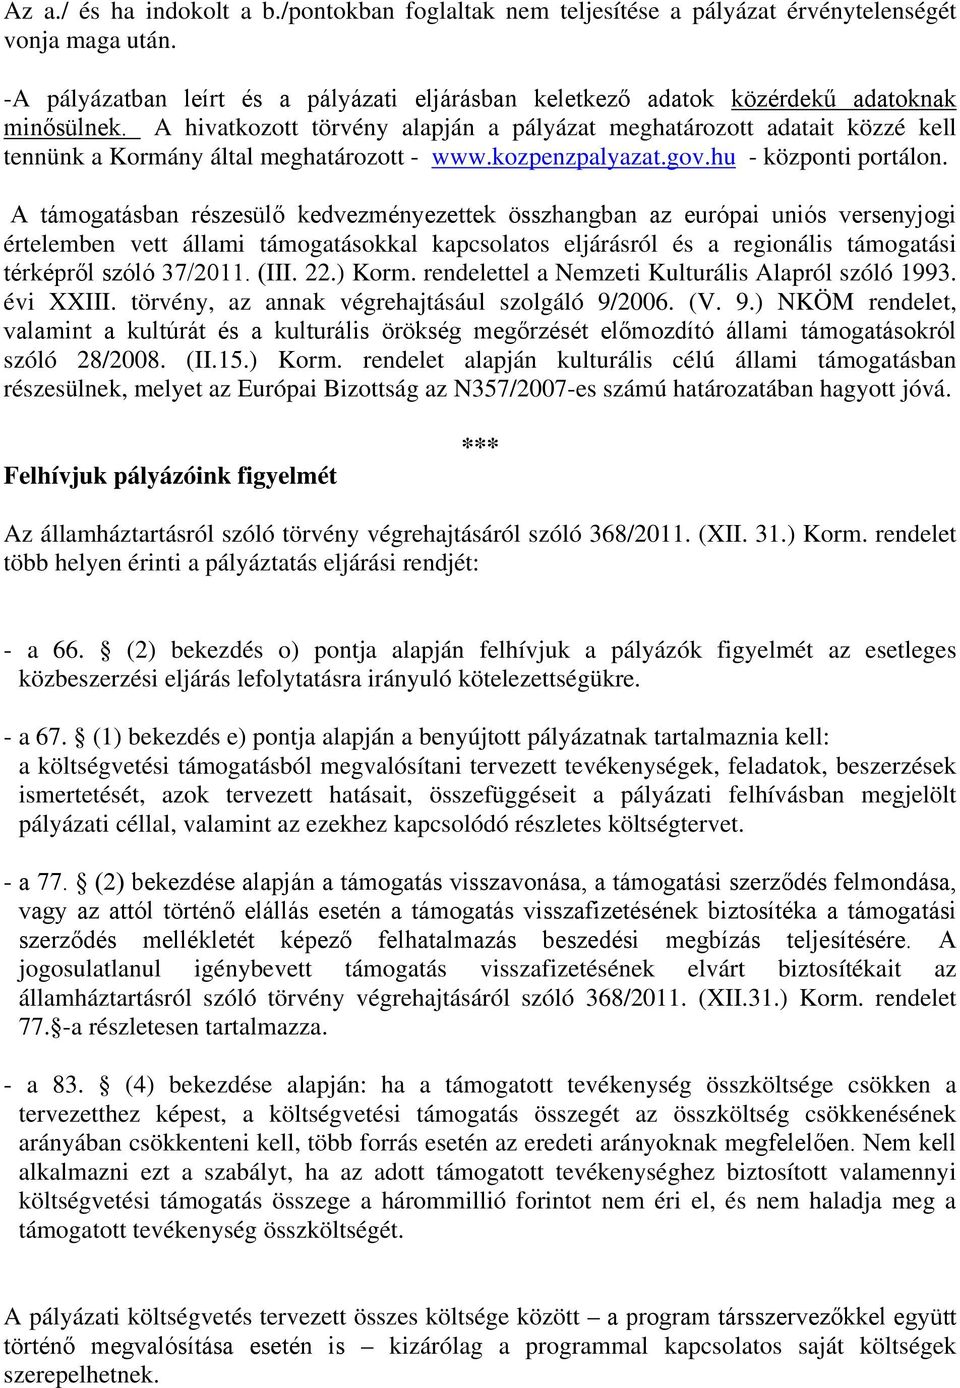 A hivatkozott törvény alapján a pályázat meghatározott adatait közzé kell tennünk a Kormány által meghatározott - www.kozpenzpalyazat.gov.hu - központi portálon.